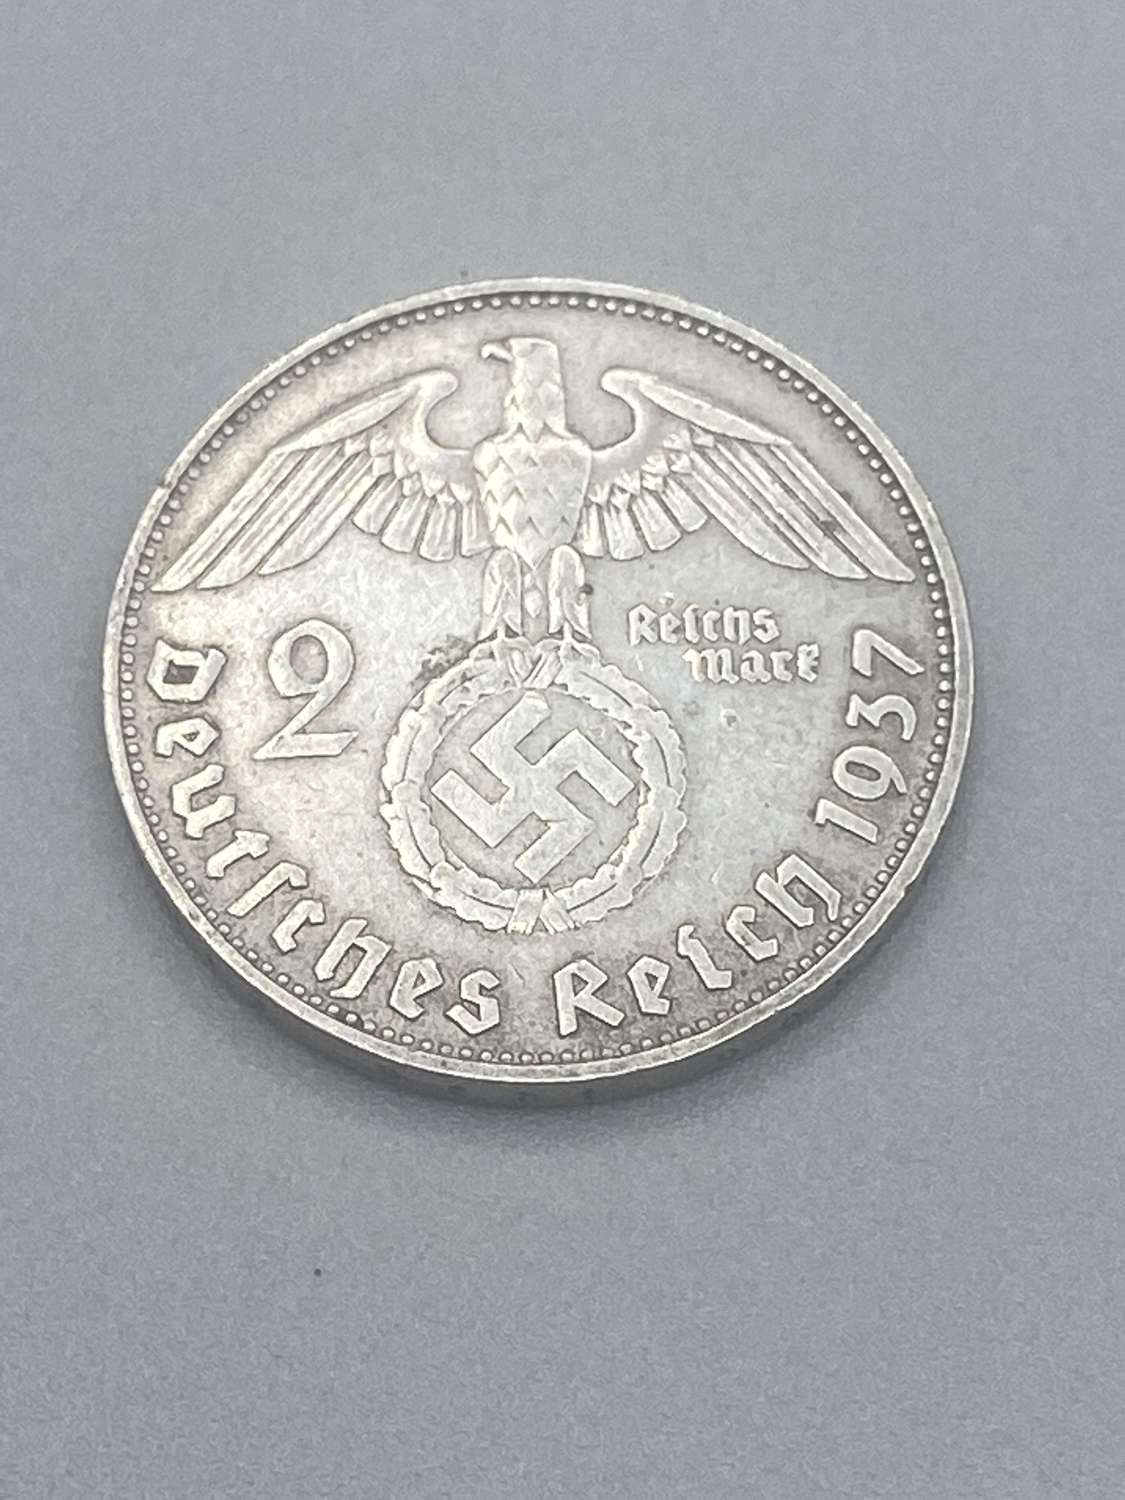 2 Reichsmark Nazi Germany (1933-1945) Silver 1937 Paul von Hindenburg